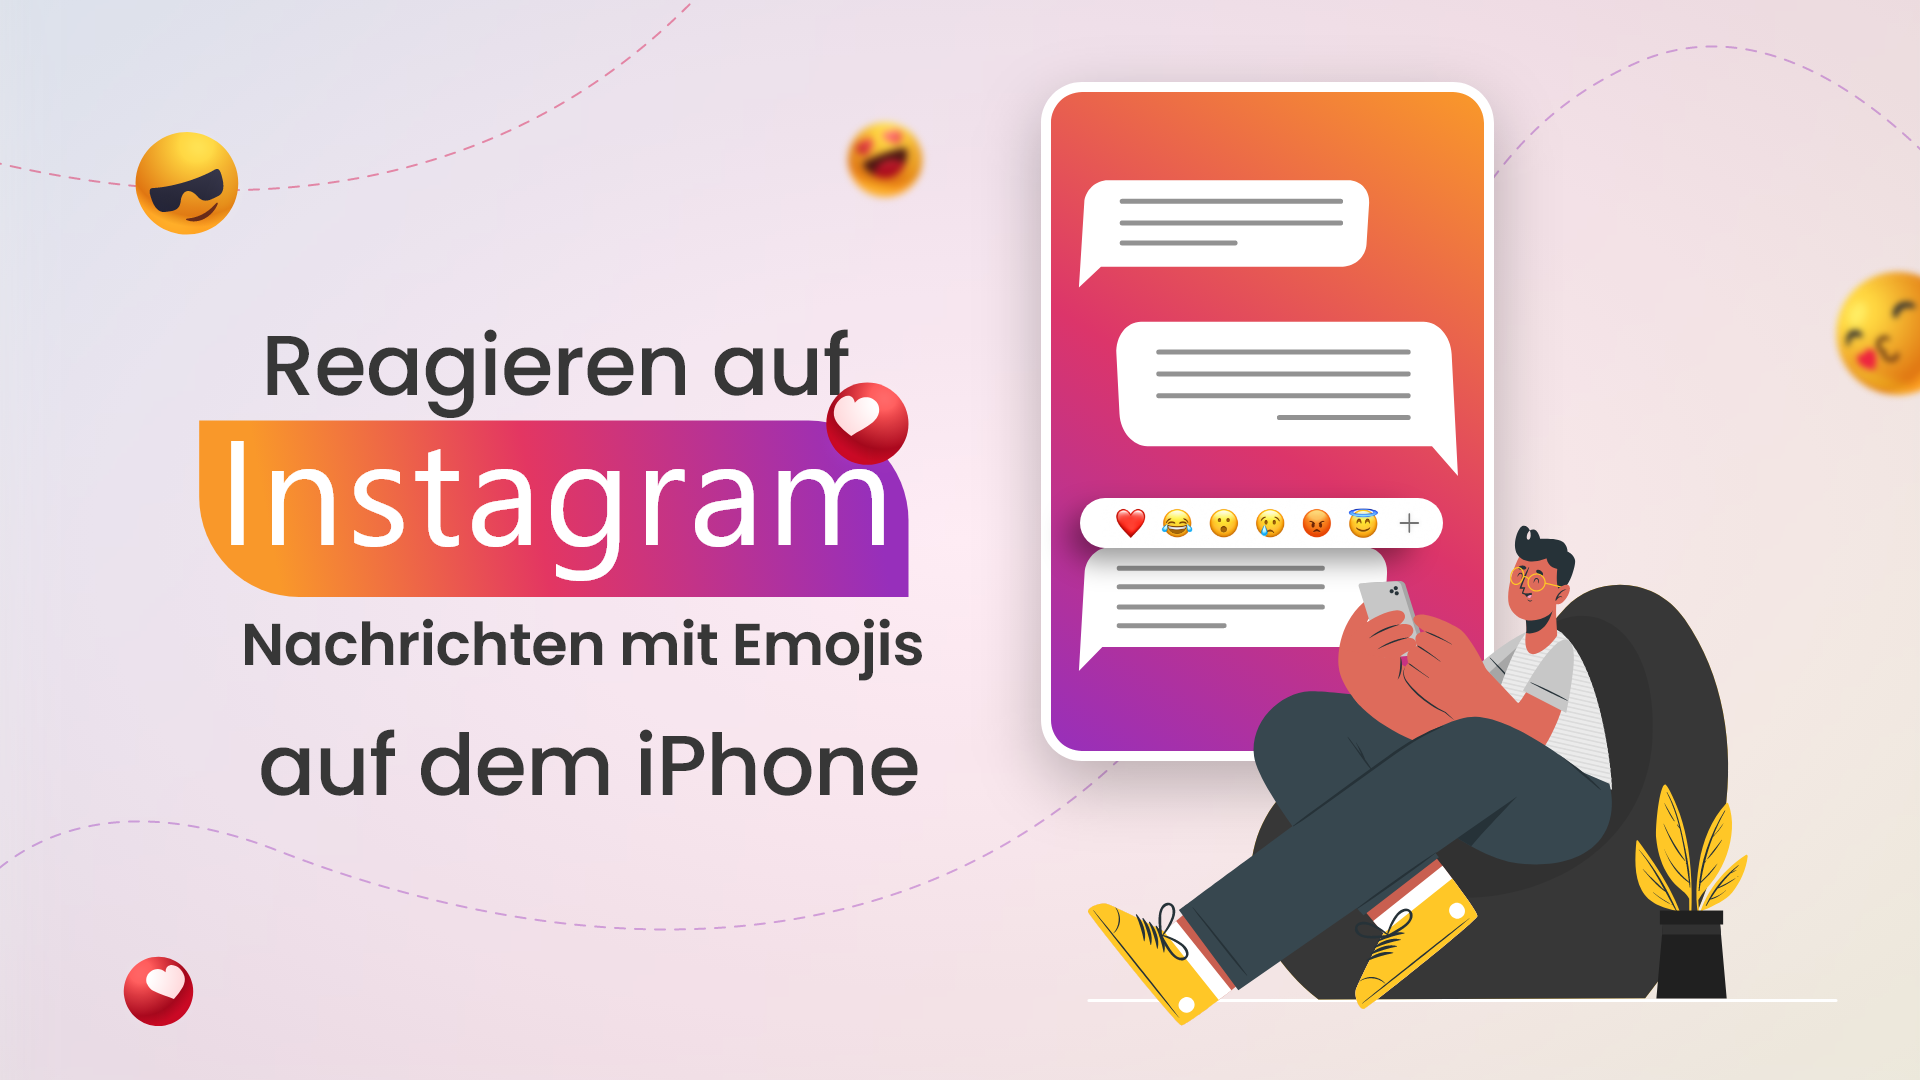 Wie reagiert man auf Instagram-Nachrichten mit Emojis auf dem iPhone?